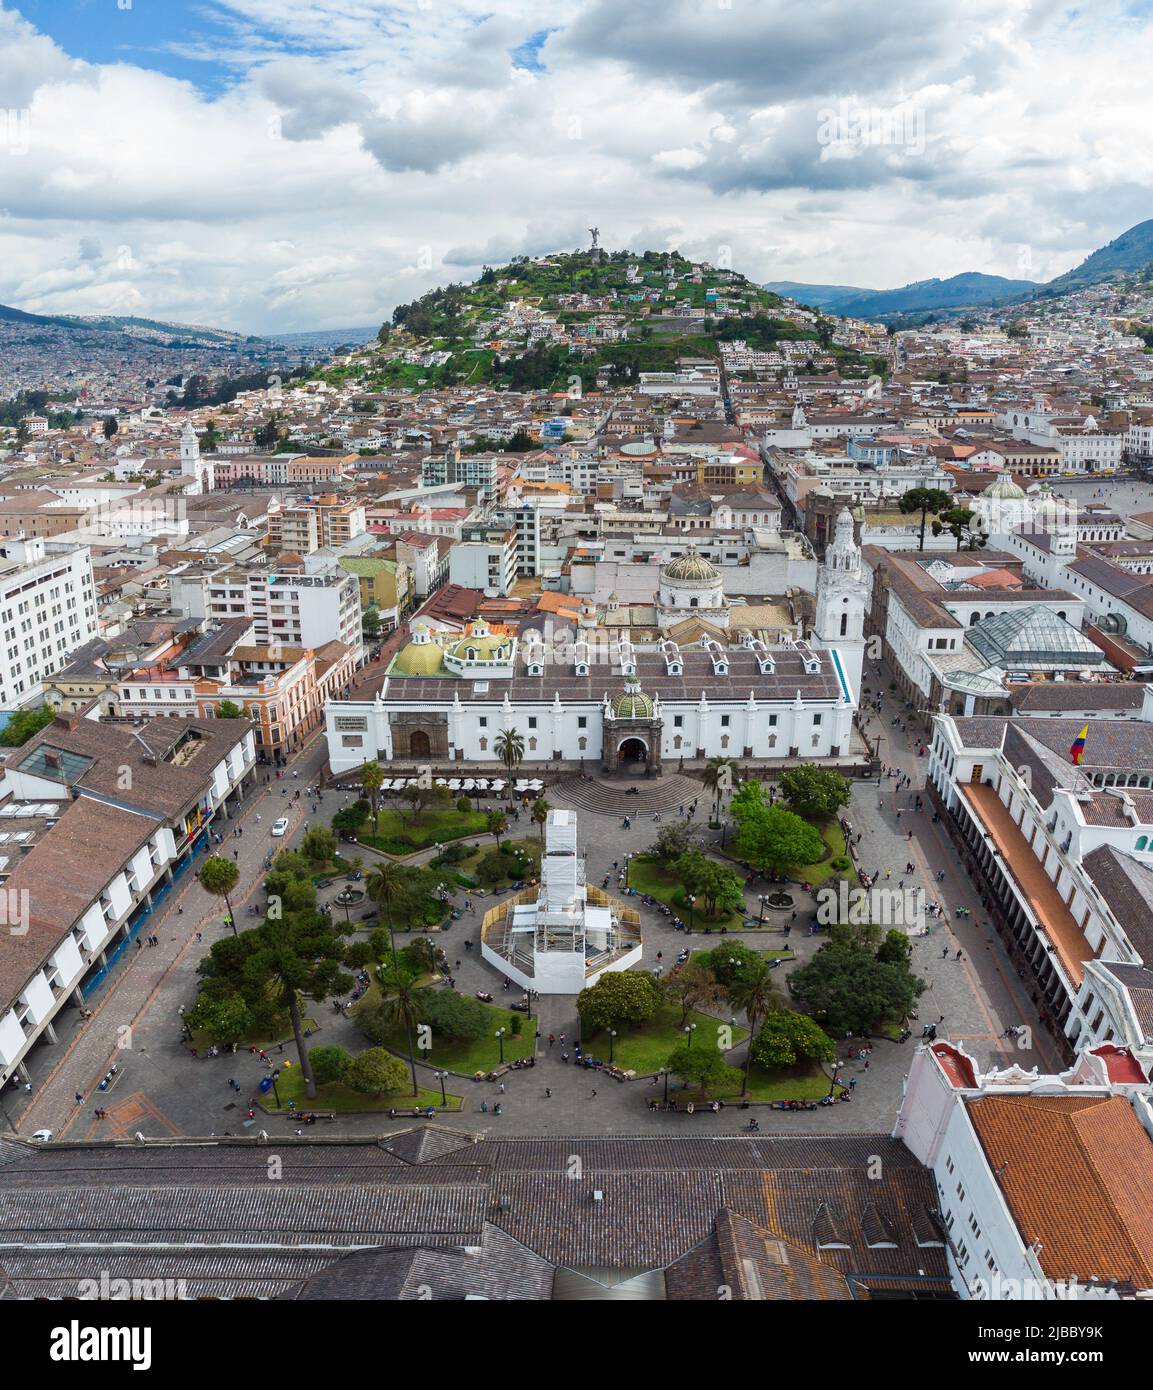 Quito, Ecuador: Vista aérea de la Plaza Grande en el corazón del centro histórico de la ciudad de Quito, en la capital del Ecuador, con el cerro El Panecillo en el b Foto de stock